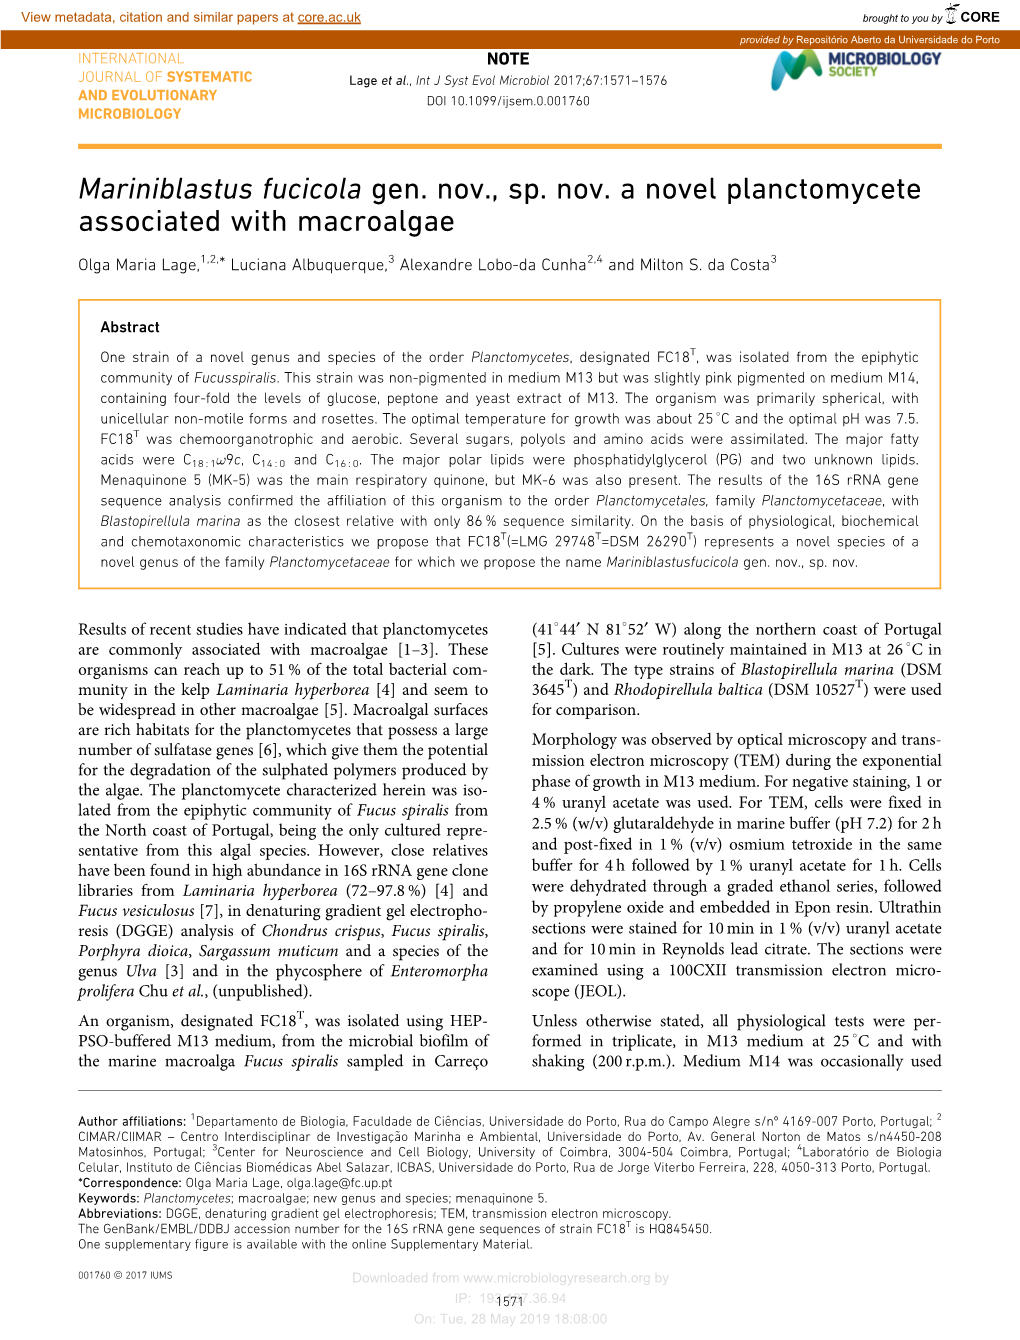 Mariniblastus Fucicola Gen. Nov., Sp. Nov. a Novel Planctomycete Associated with Macroalgae